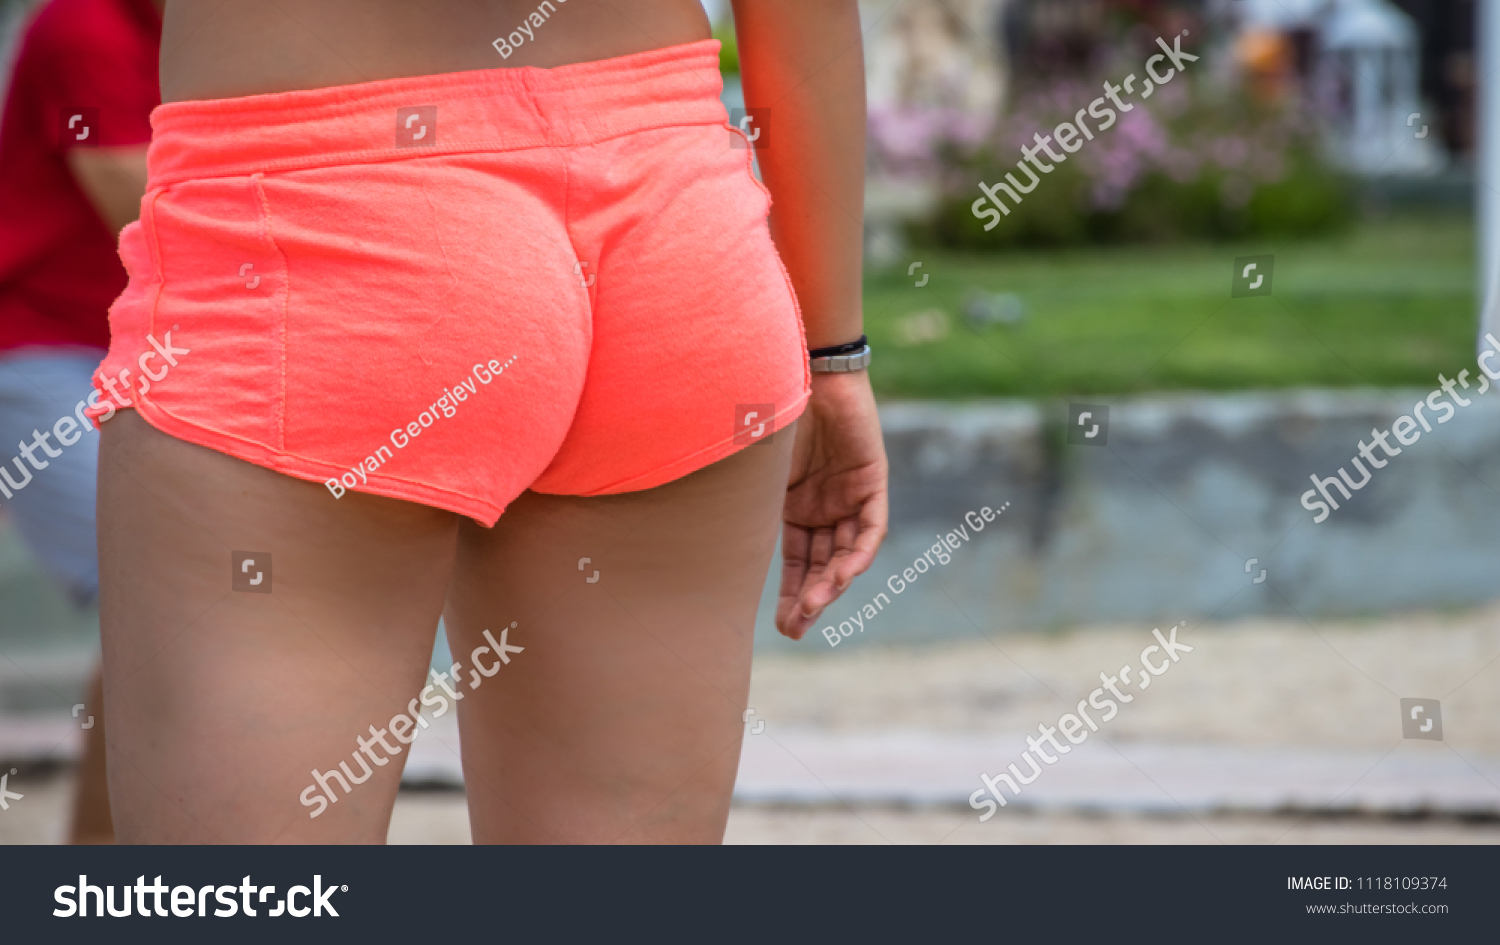 Nice Ass In Short Shorts